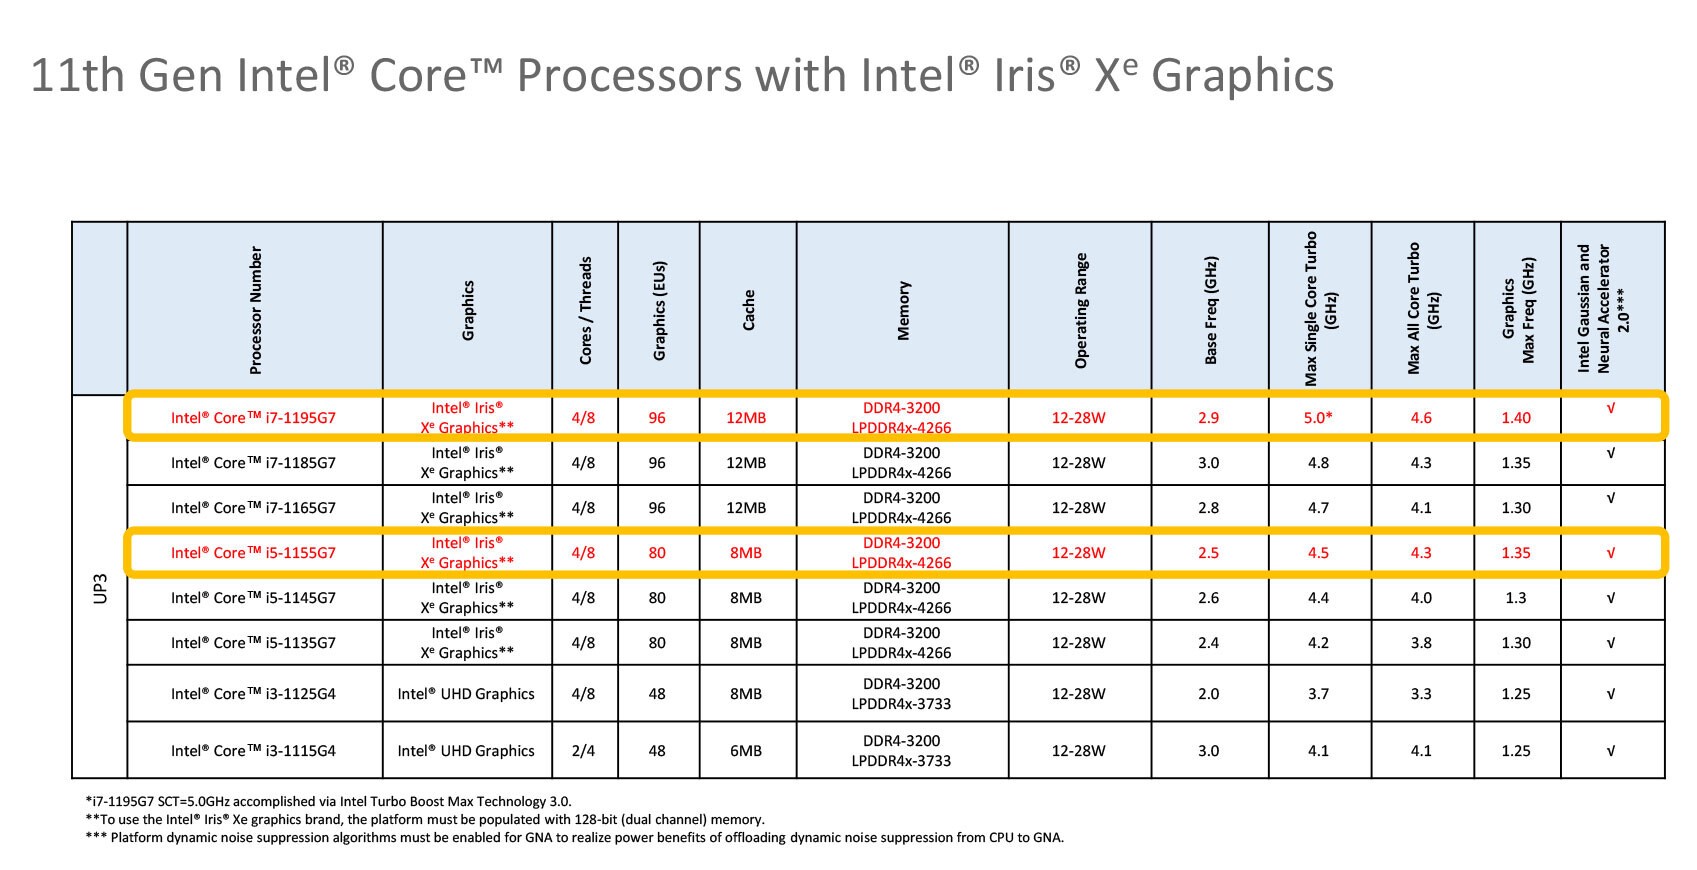 Intel anunció dos nuevas adiciones a la línea de procesadores Intel Core de 11ª generación. Estos nuevos procesadores con 5G